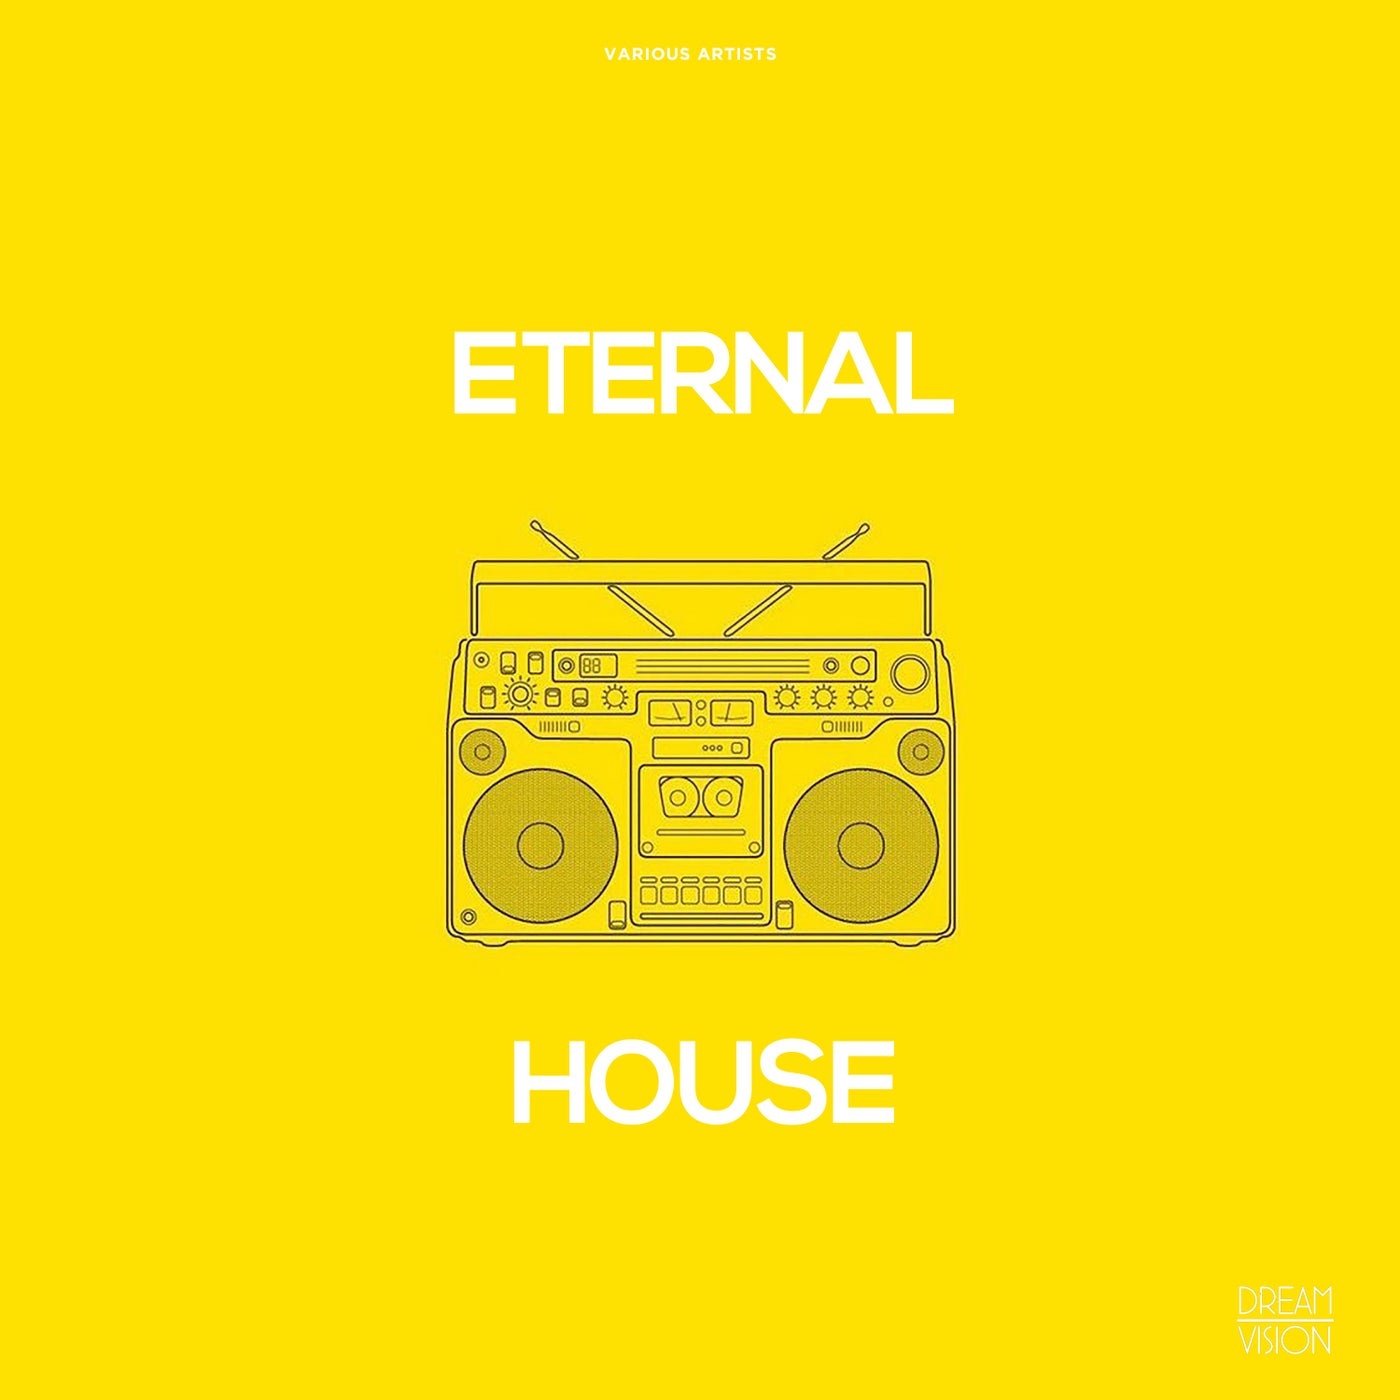 Eternal House